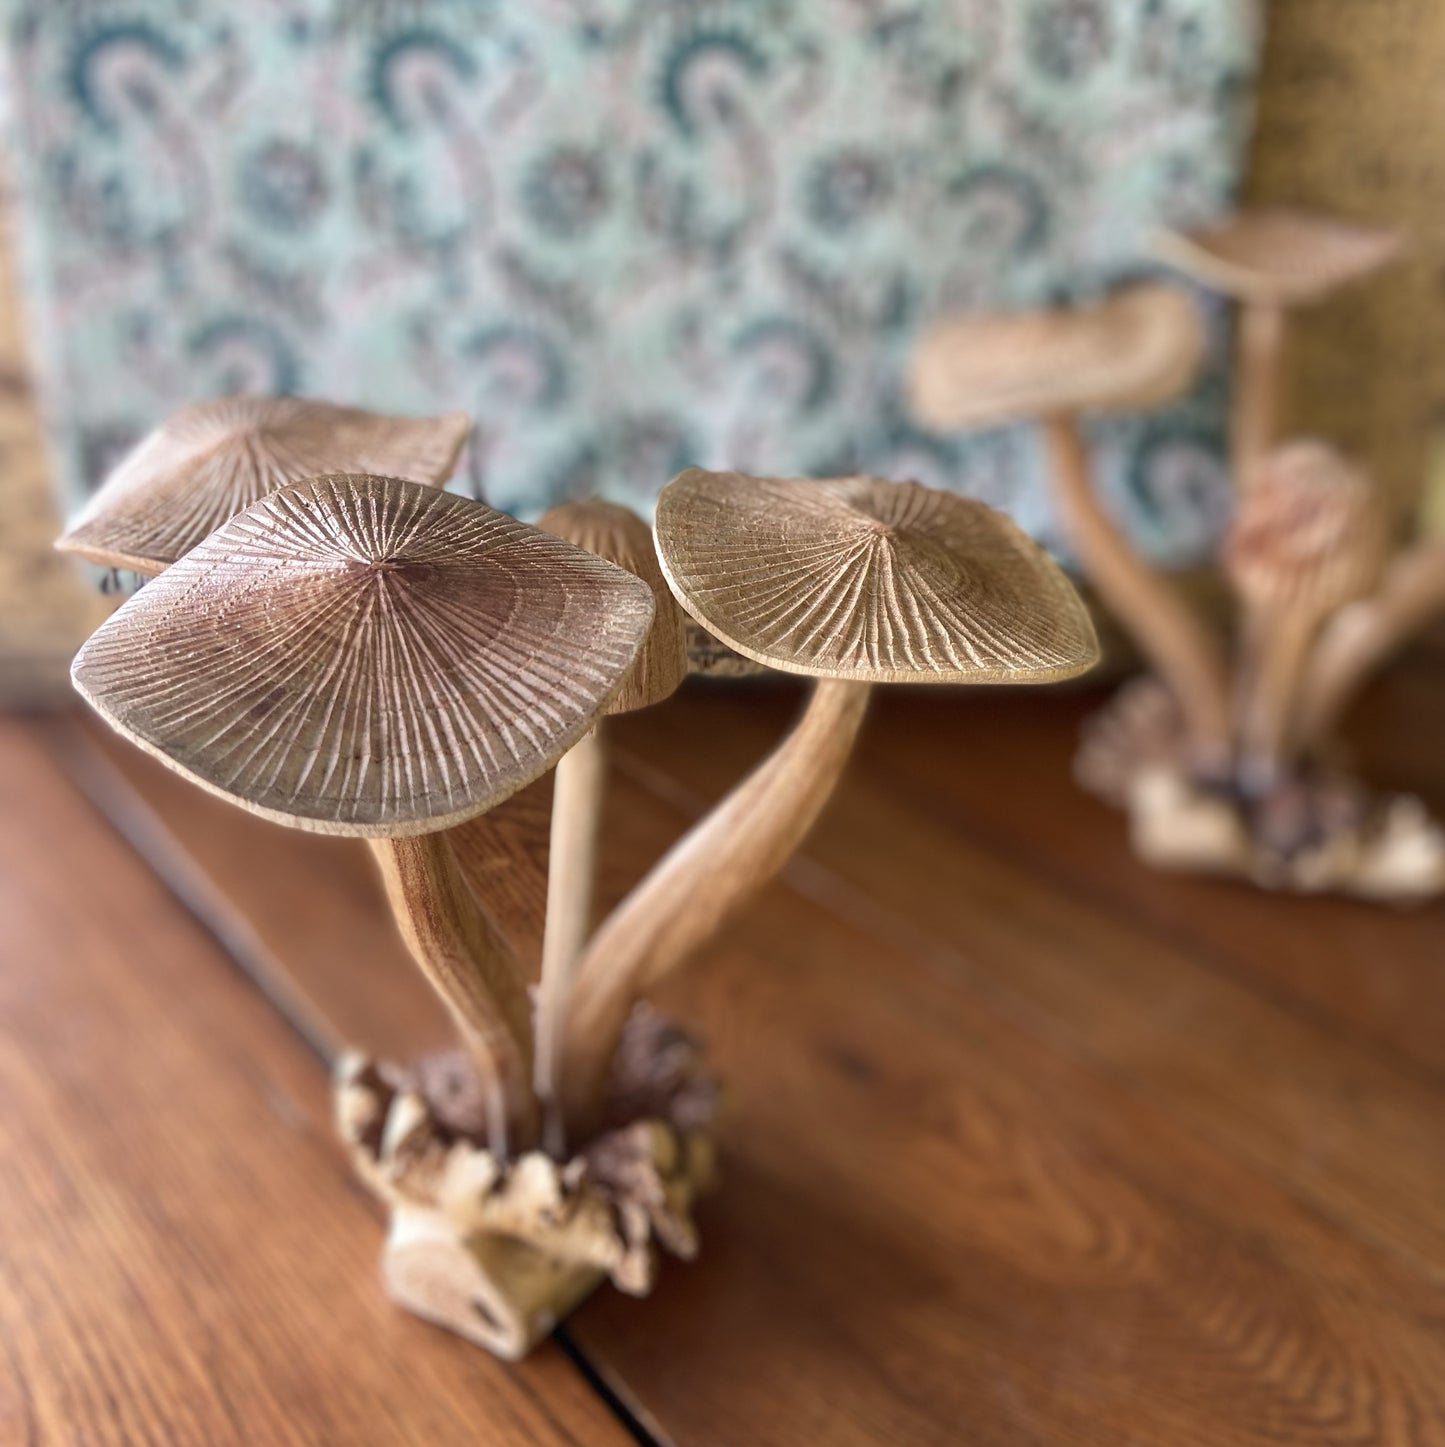 Wooden Mushroom Sculpture